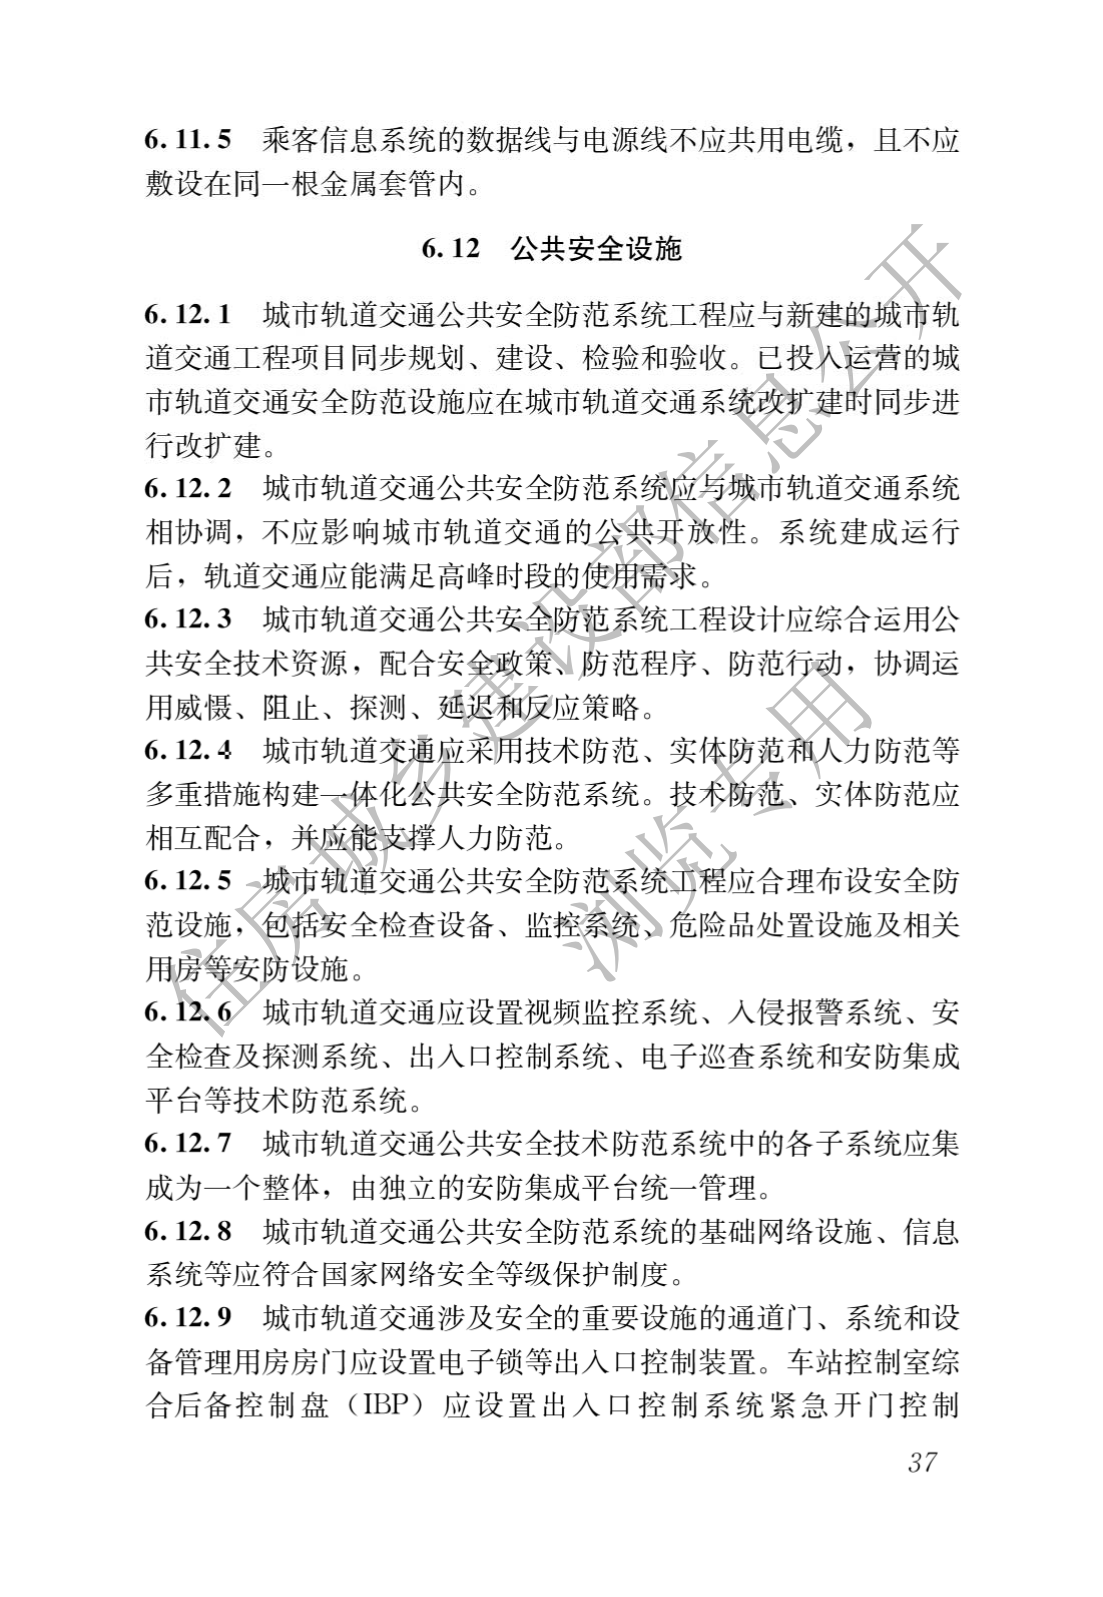 住房和城鄉建設部關于發布國家标準 《城市軌道交通工(gōng)程項目規範》的公告(圖41)